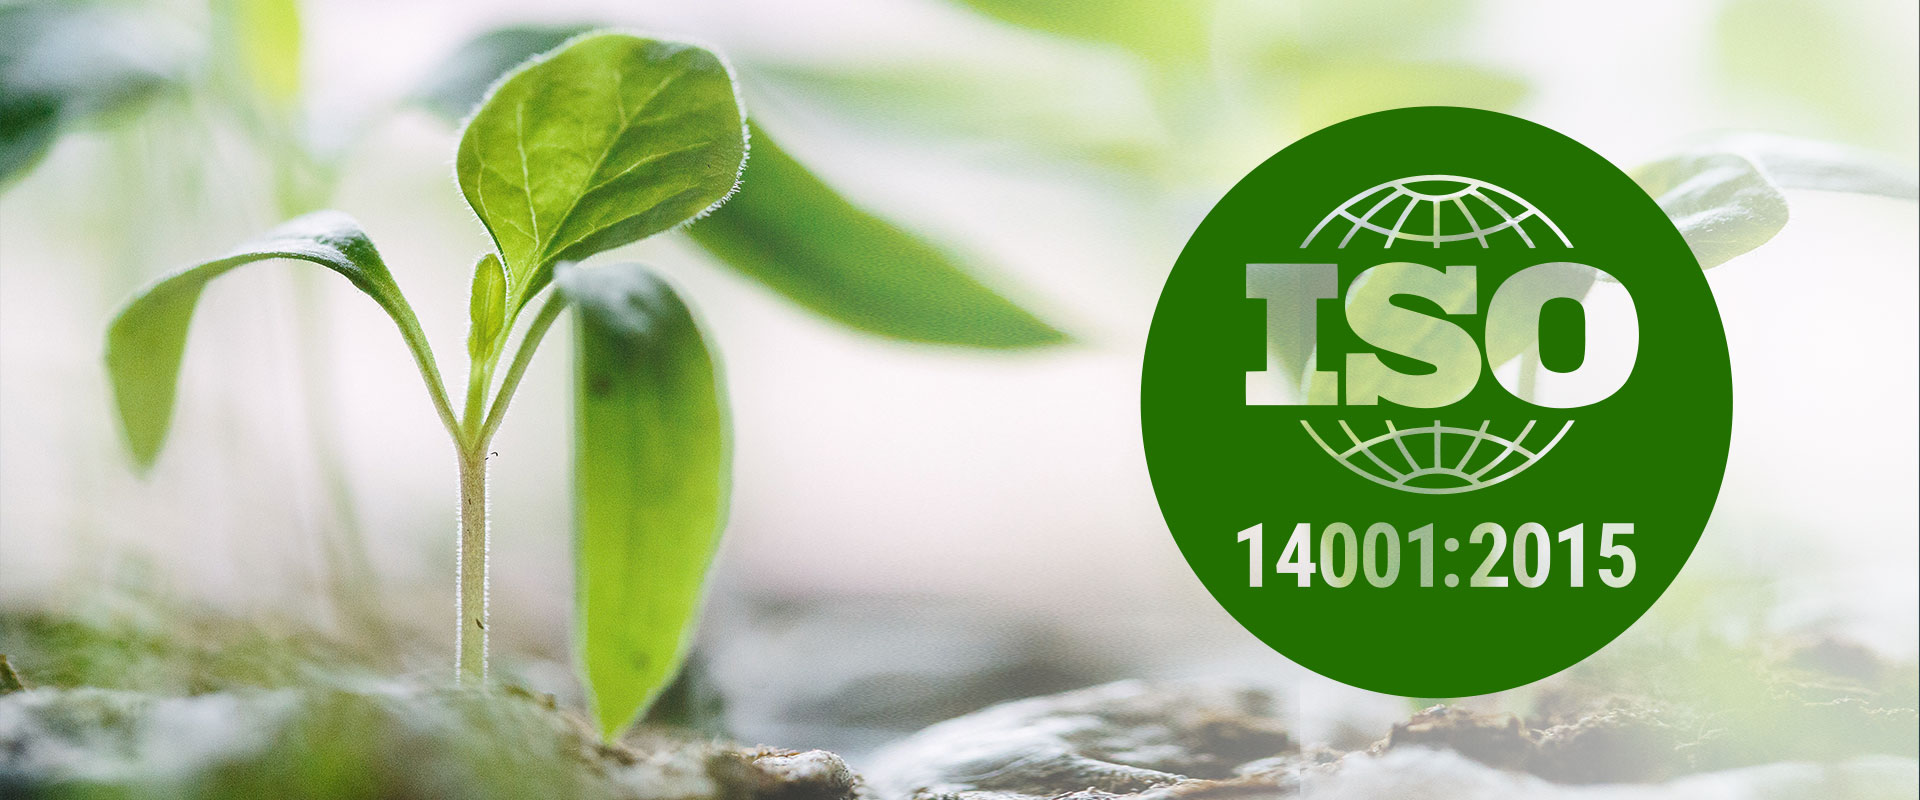 Исо 14001 документация. Международный стандарт ISO 14001. ISO 14000/14001. ISO 14001 2015 системы экологического менеджмента. ISO 14000 Международный стандарт.